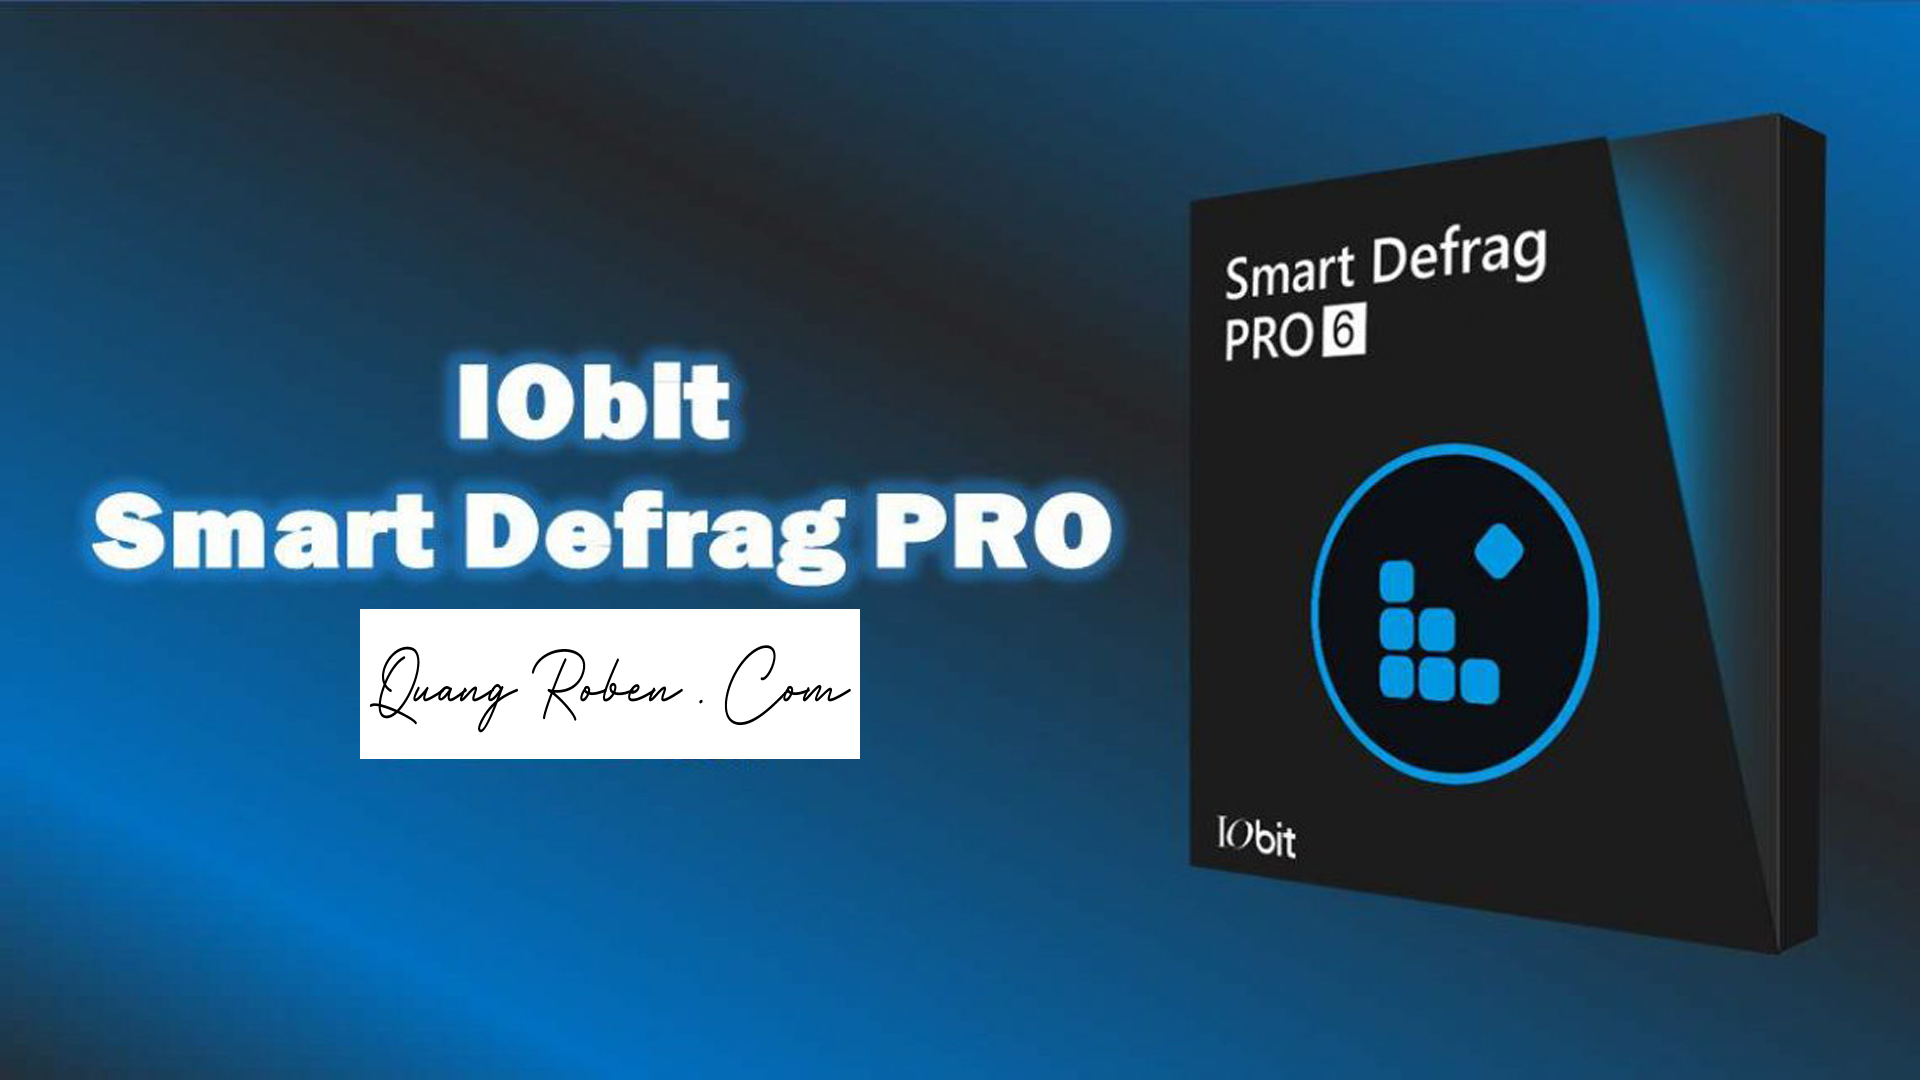 IObit Smart Defrag 9.0.0.307 download the new